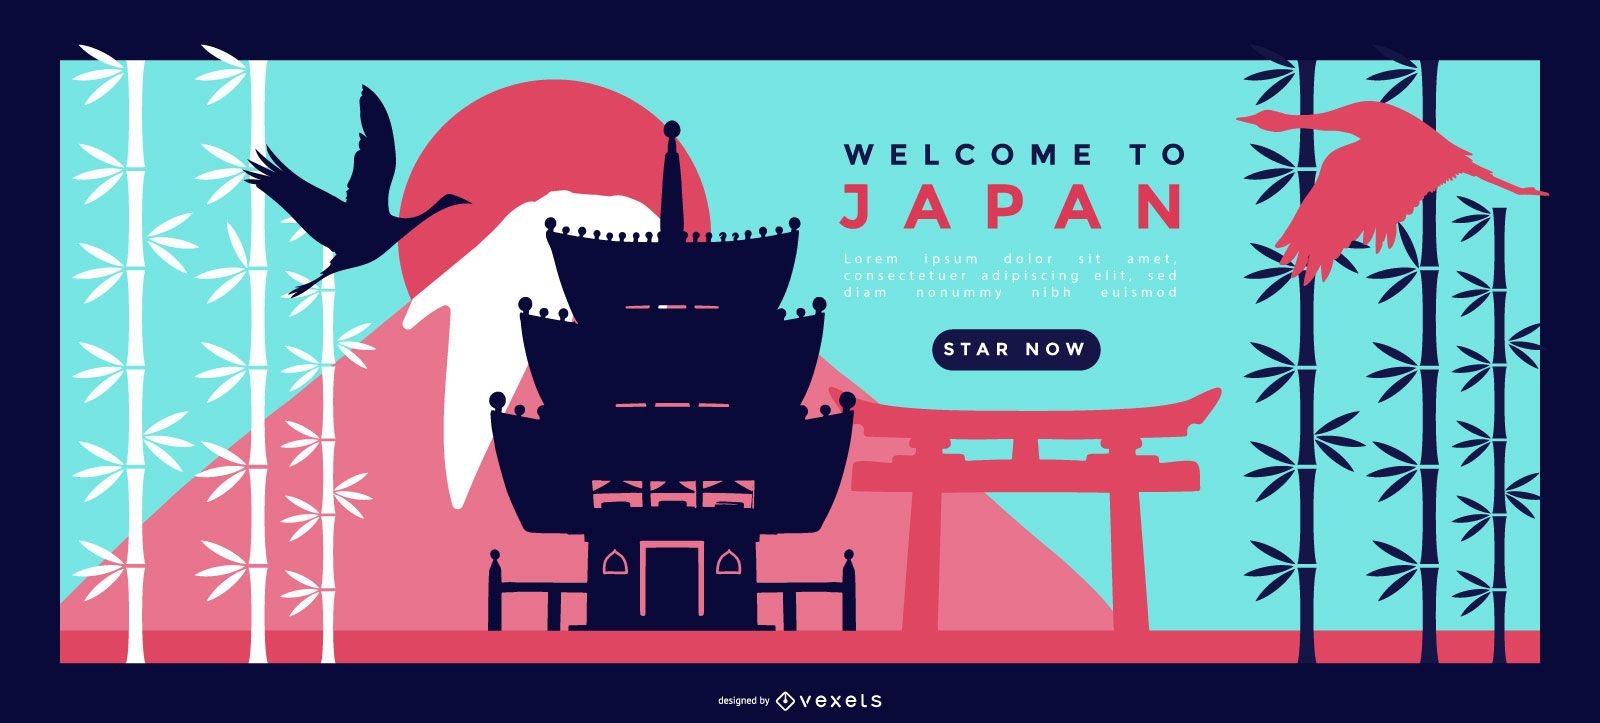 Japan Landing Page Design